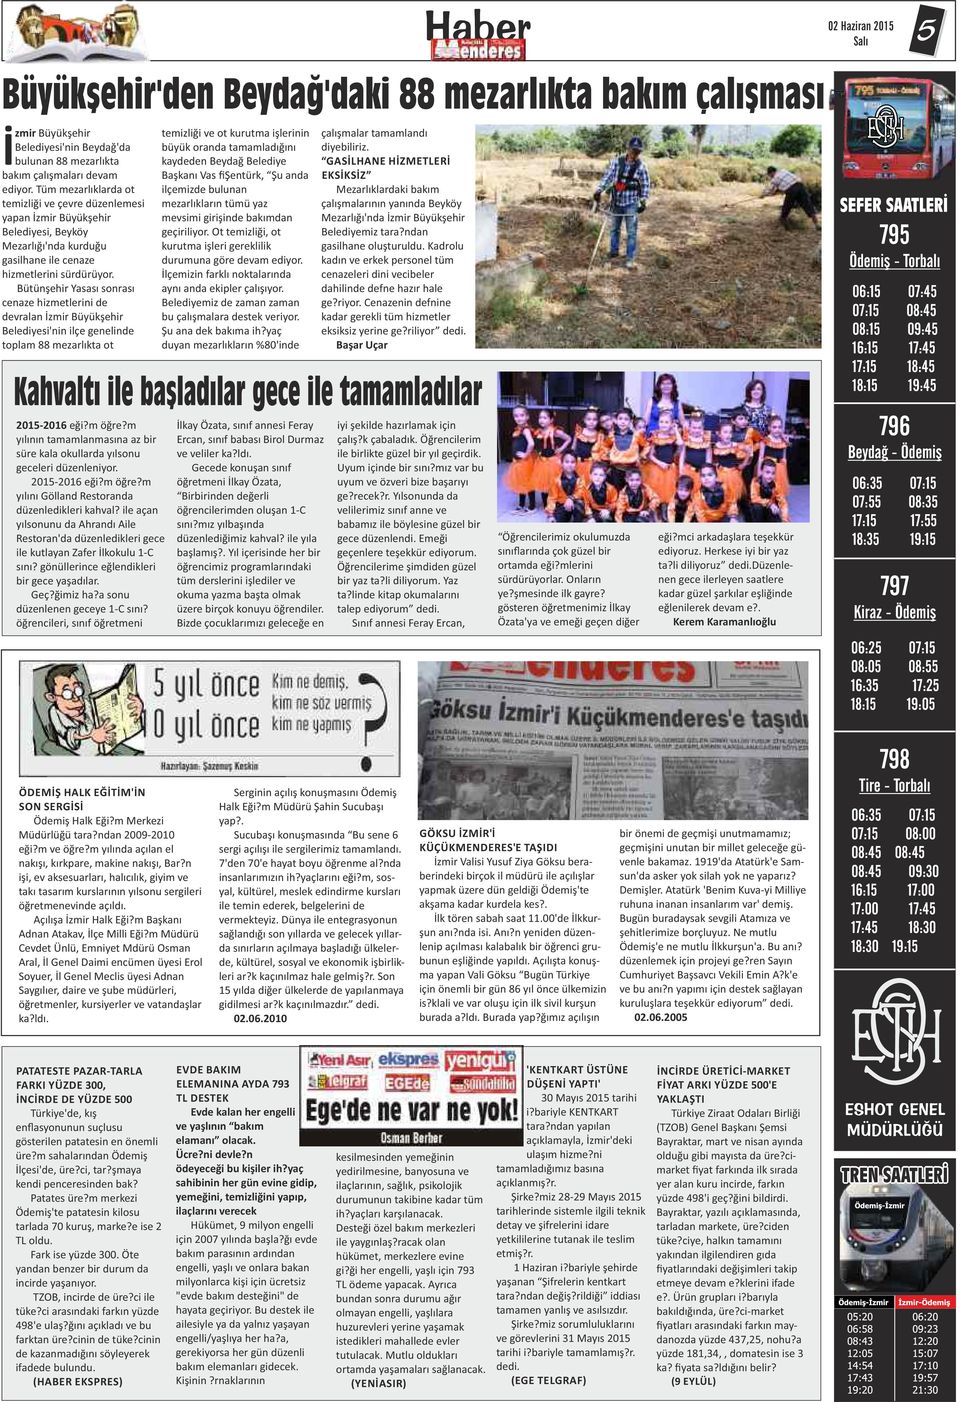 Bütünşehir Yasası sonrası cenaze hizmetlerini de devralan İzmir Büyükşehir Belediyesi'nin ilçe genelinde toplam 88 mezarlıkta ot temizliği ve ot kurutma işlerinin büyük oranda tamamladığını kaydeden